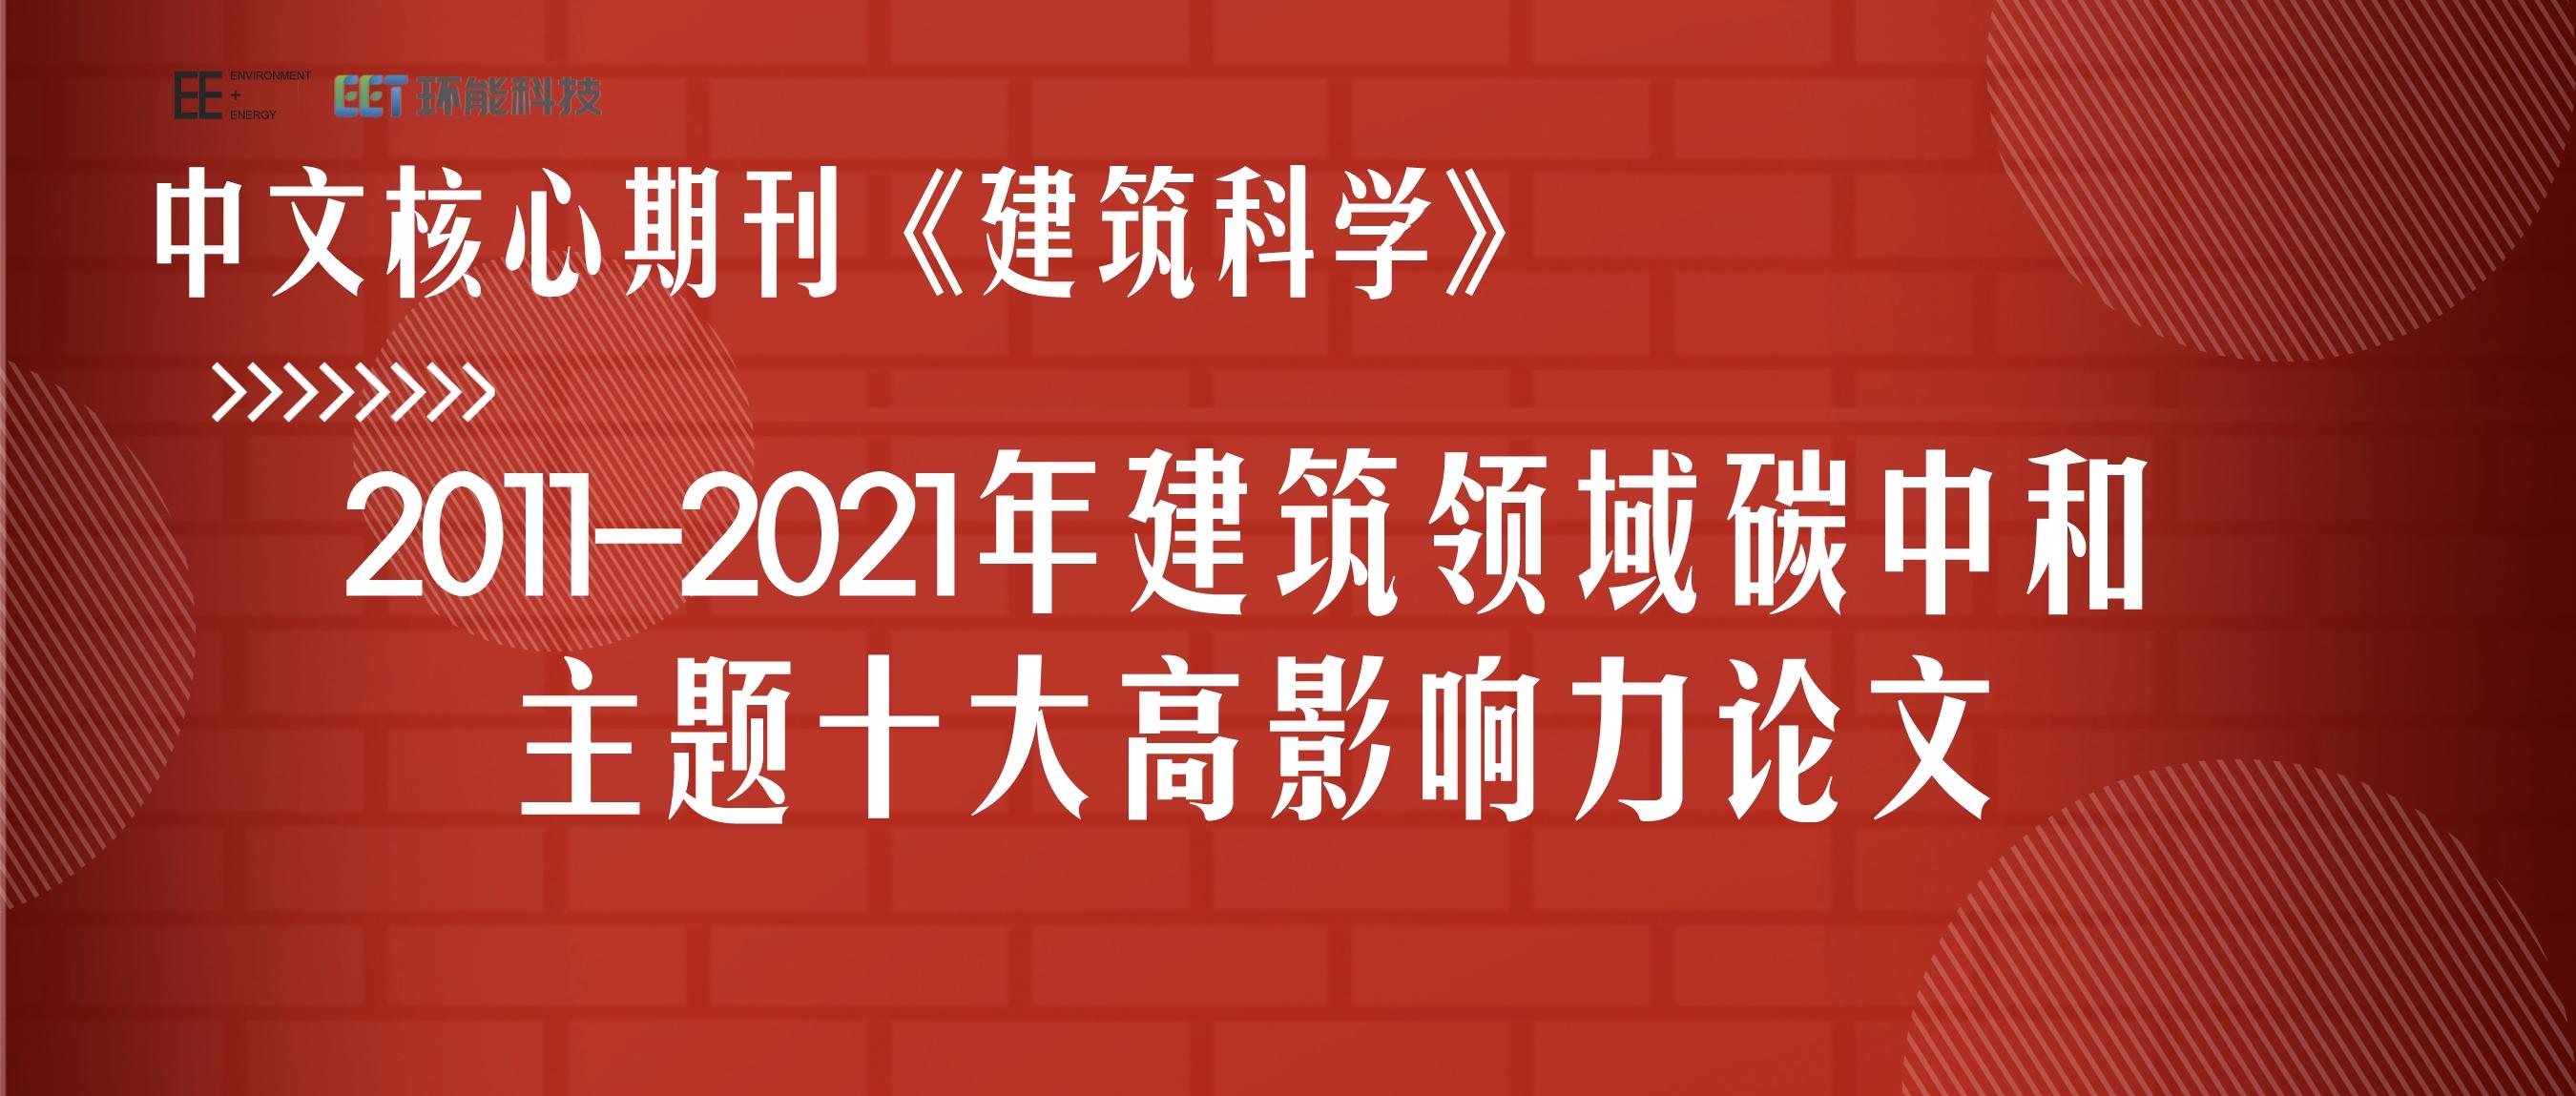 中文核心期刊《建筑科学》2011-2021年建筑领域碳中和主题十大高影响力论文